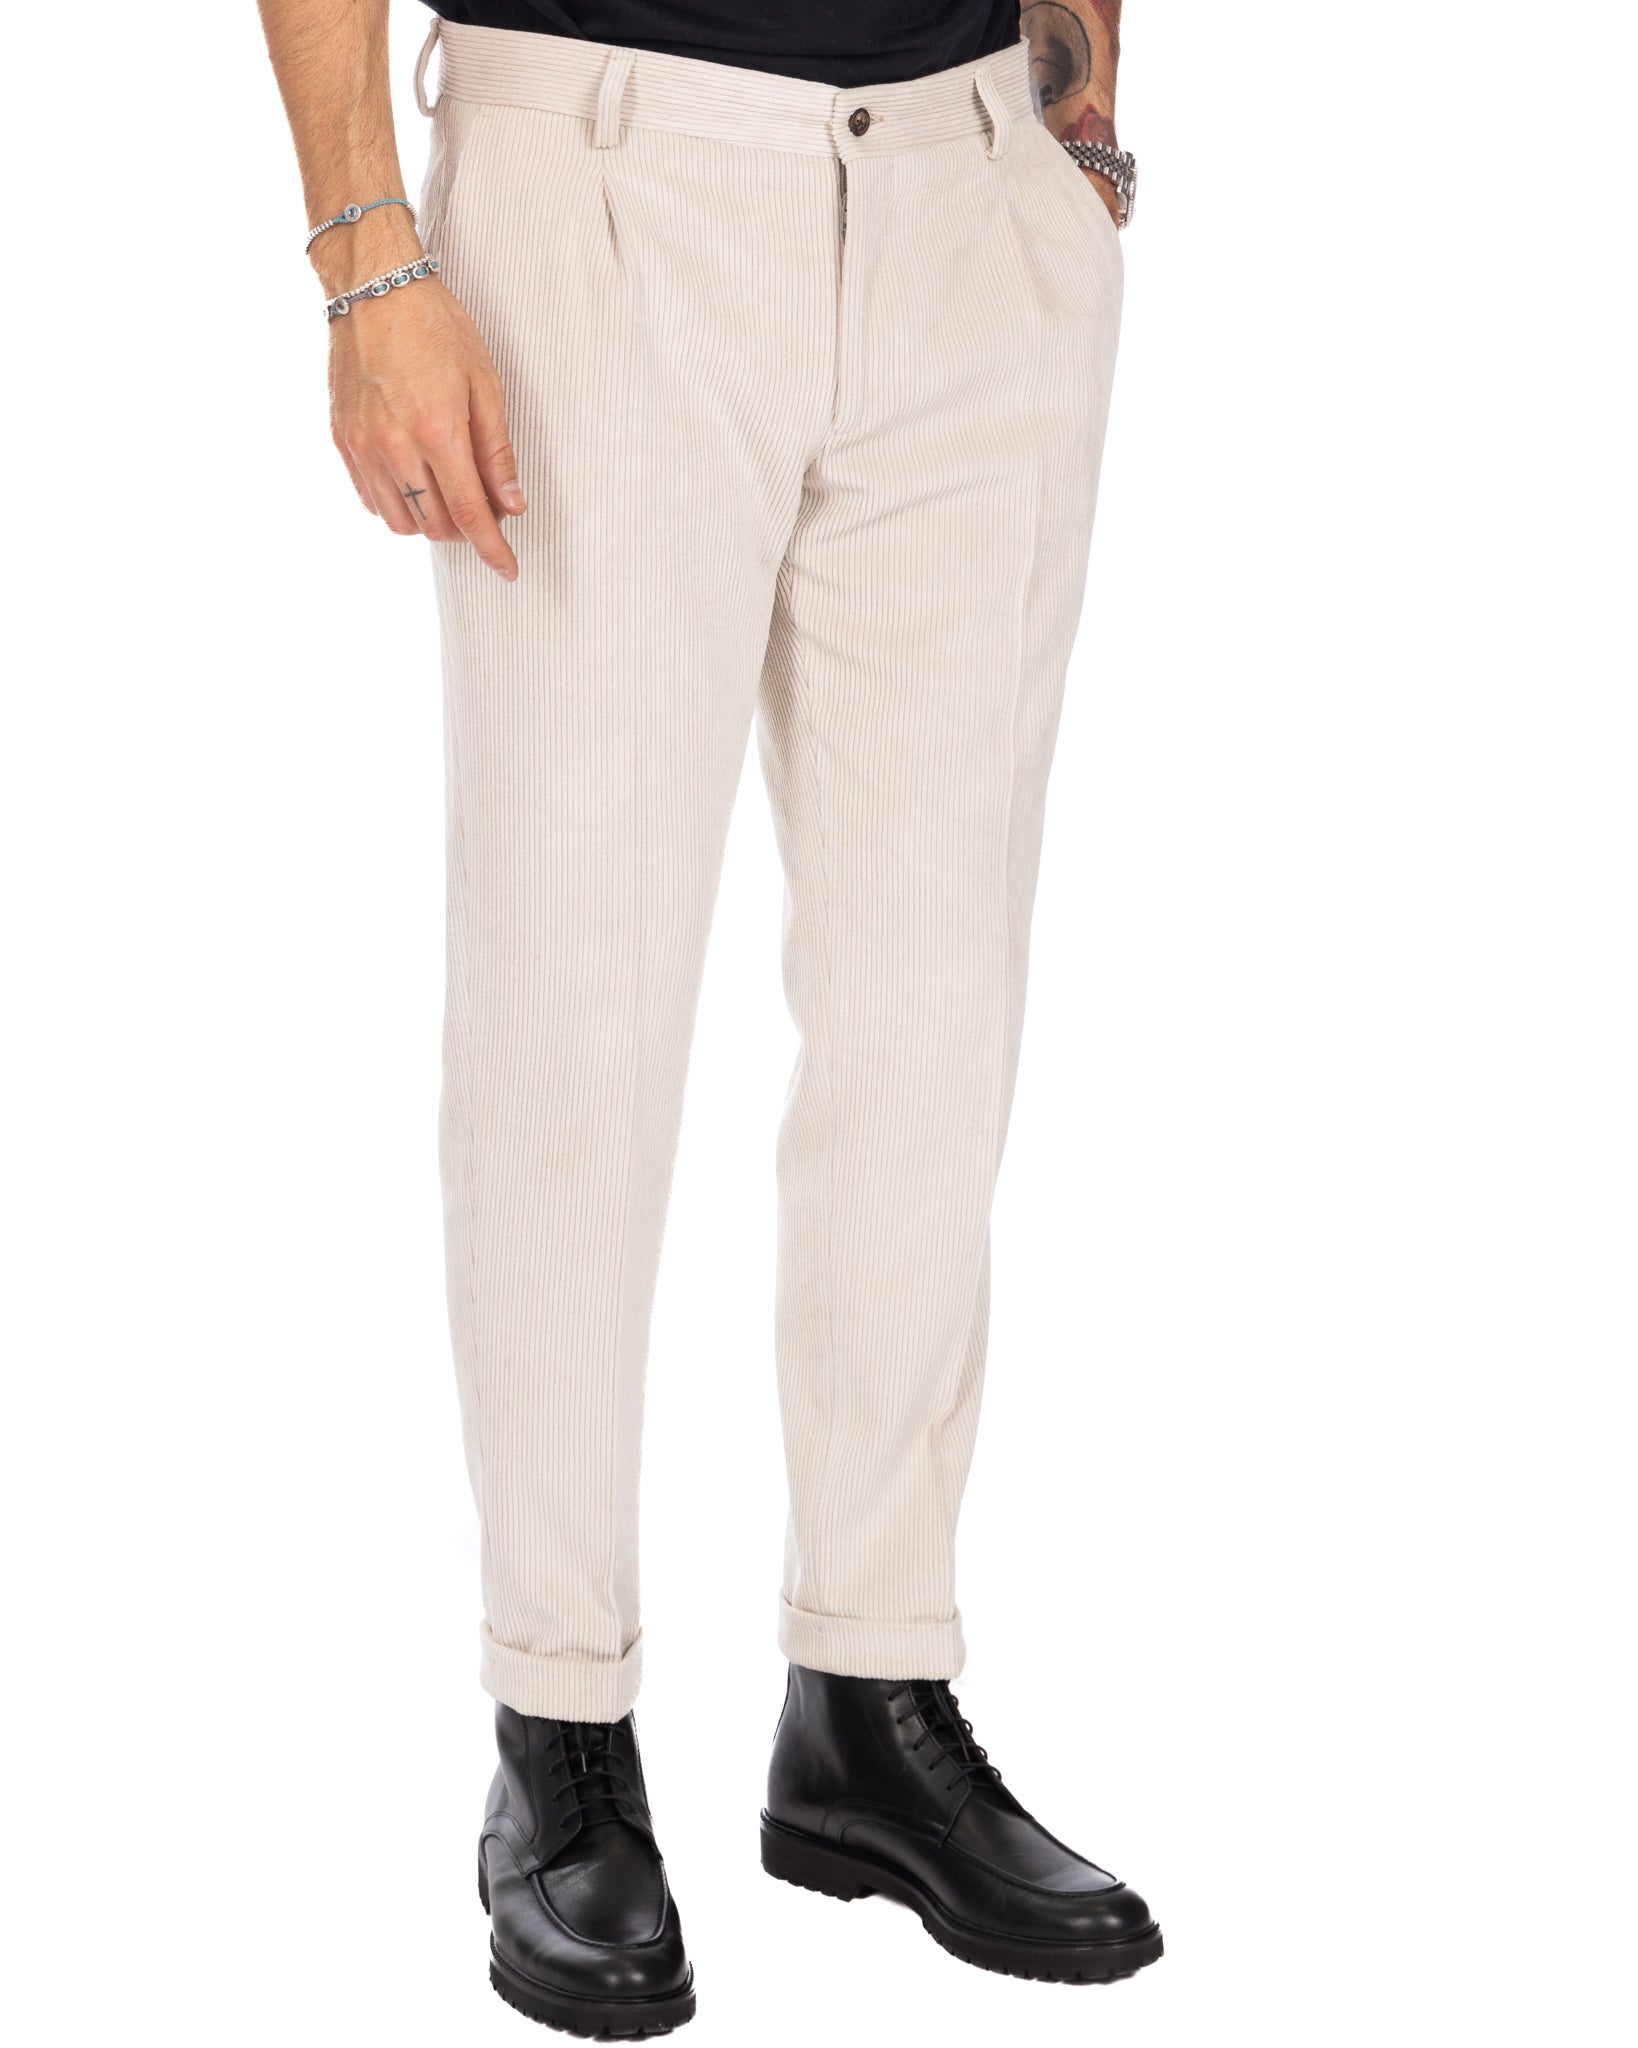 Lodi - cream trousers with velvet pleats 